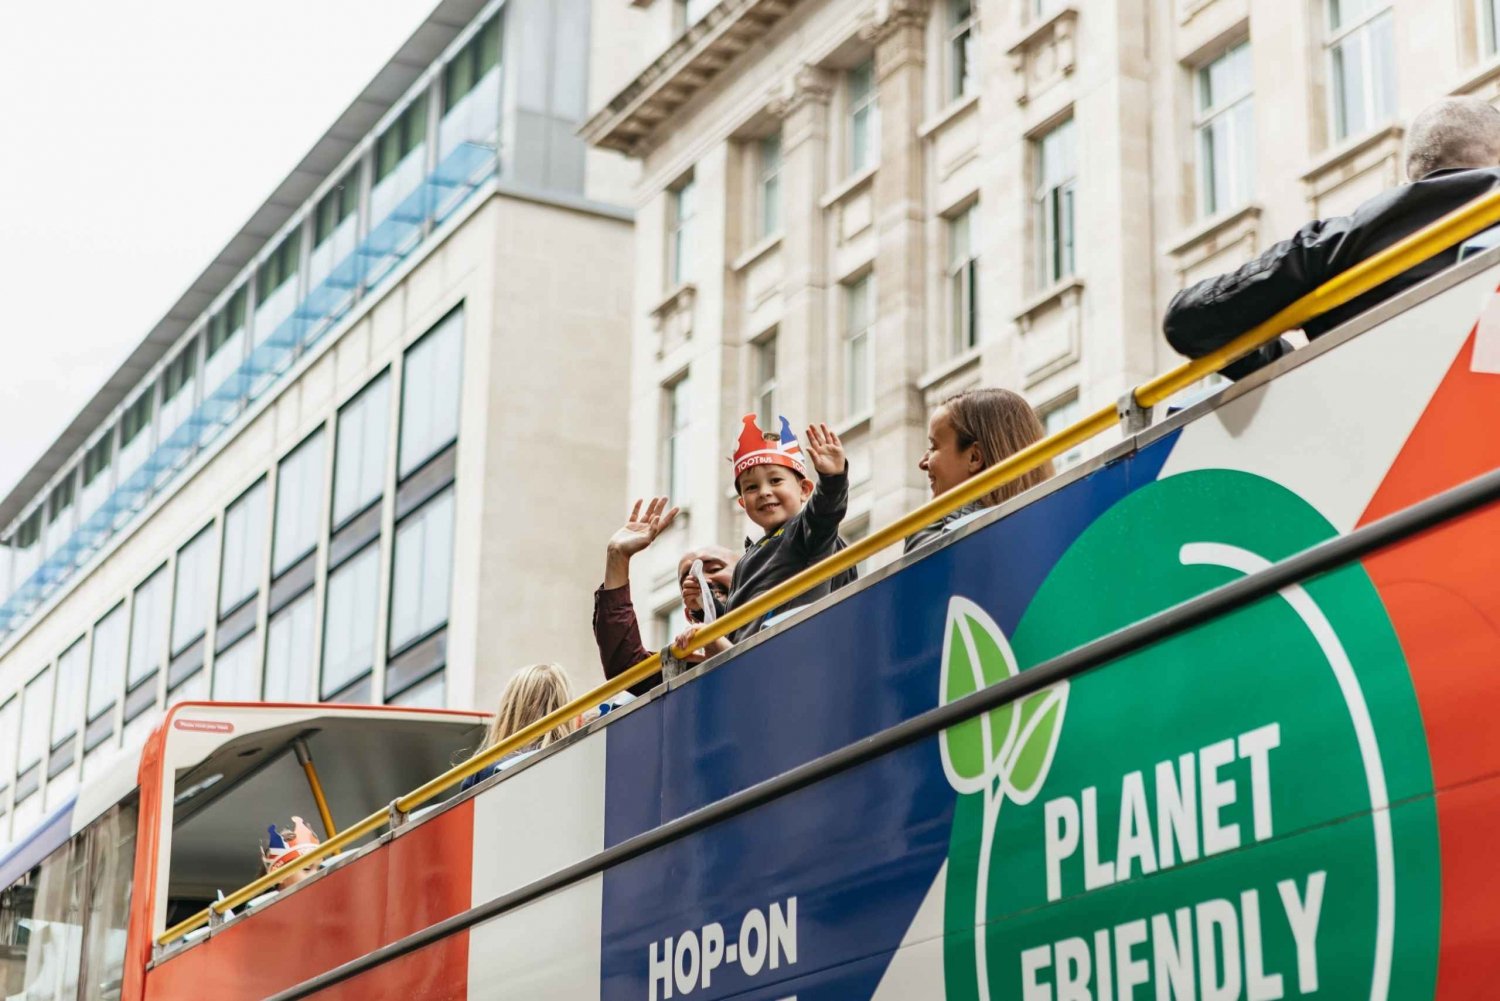 Londres: recorrido en autobús para niños con comentarios